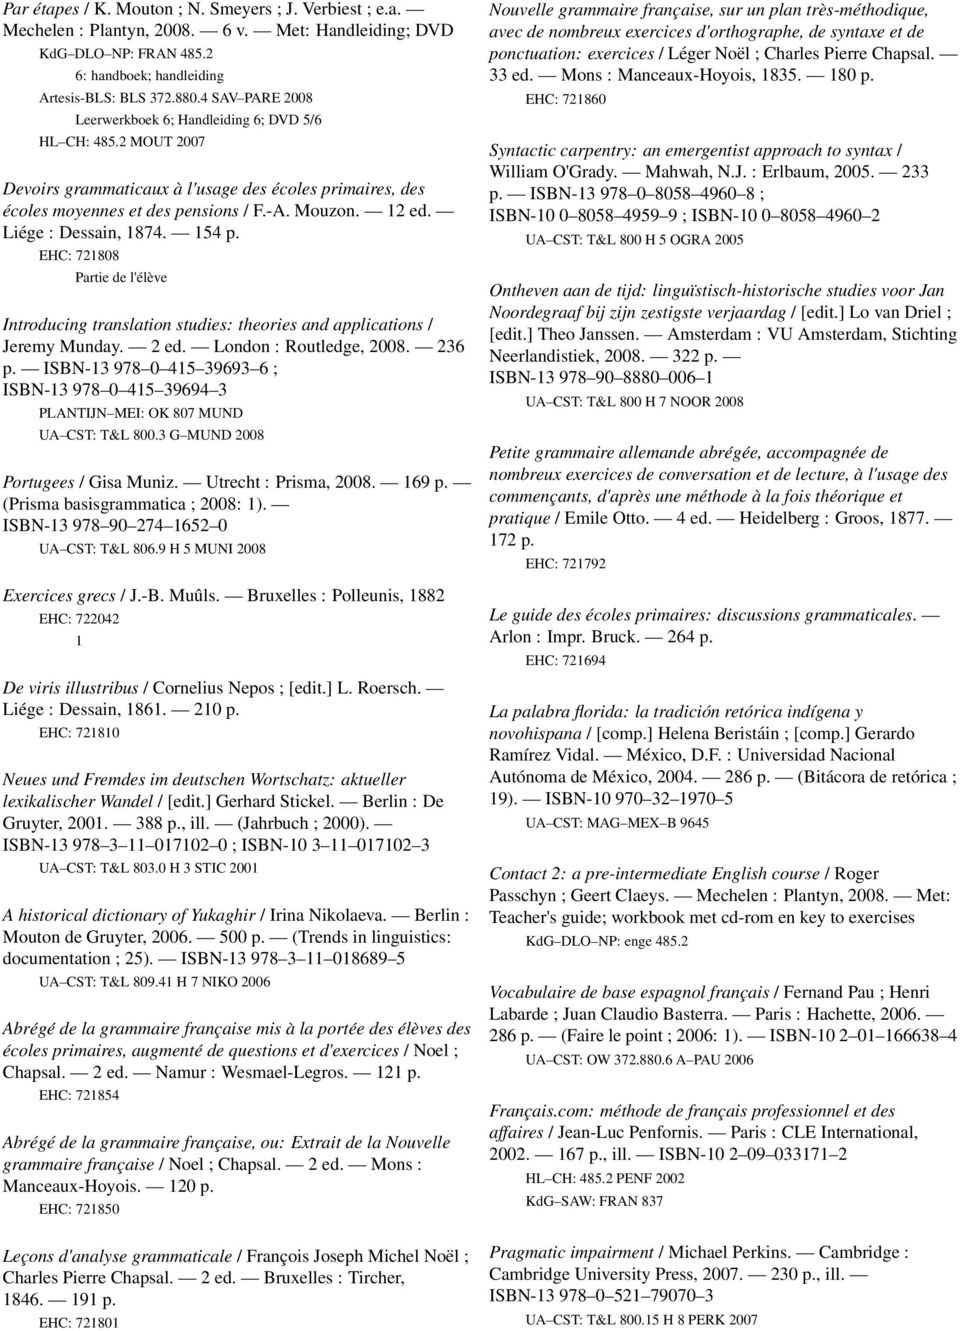 Liége : Dessain, 874. 54 p. EHC: 72808 Partie de l'élève Introducing translation studies: theories and applications / Jeremy Munday. 2 ed. London : Routledge, 2008. 236 p.